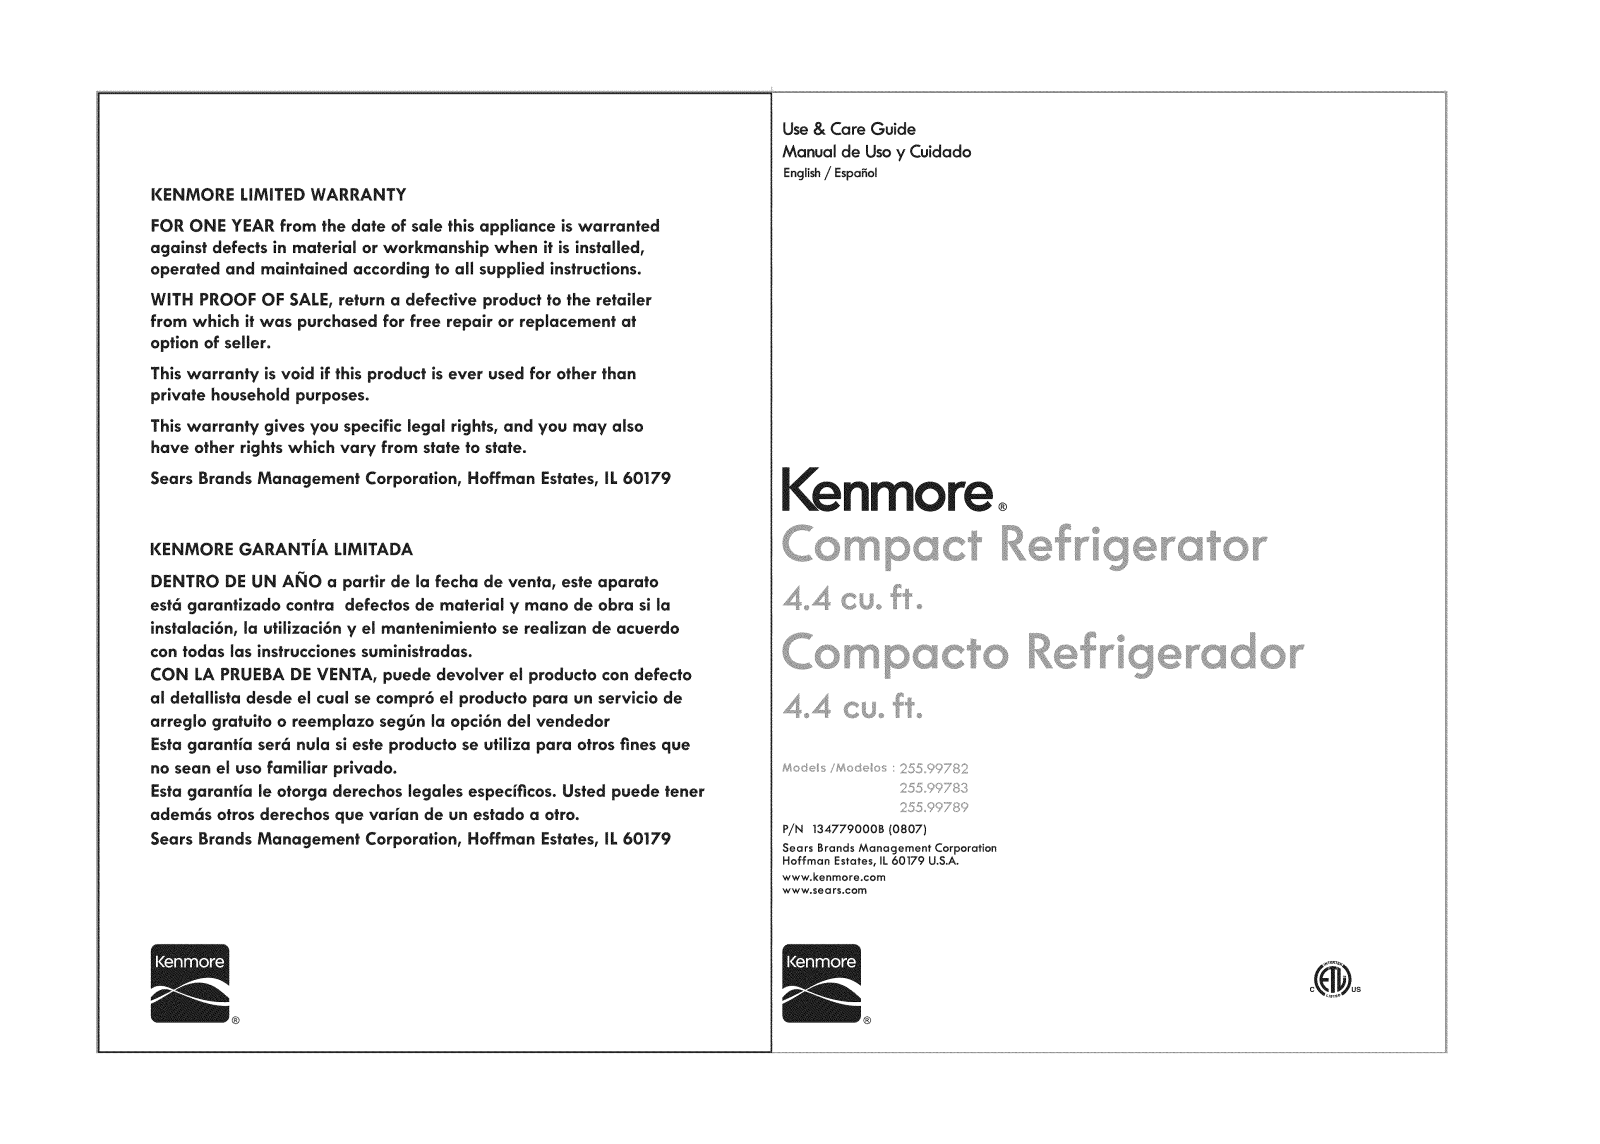 Kenmore 25599789, 25599783110, 25599782 Owner’s Manual